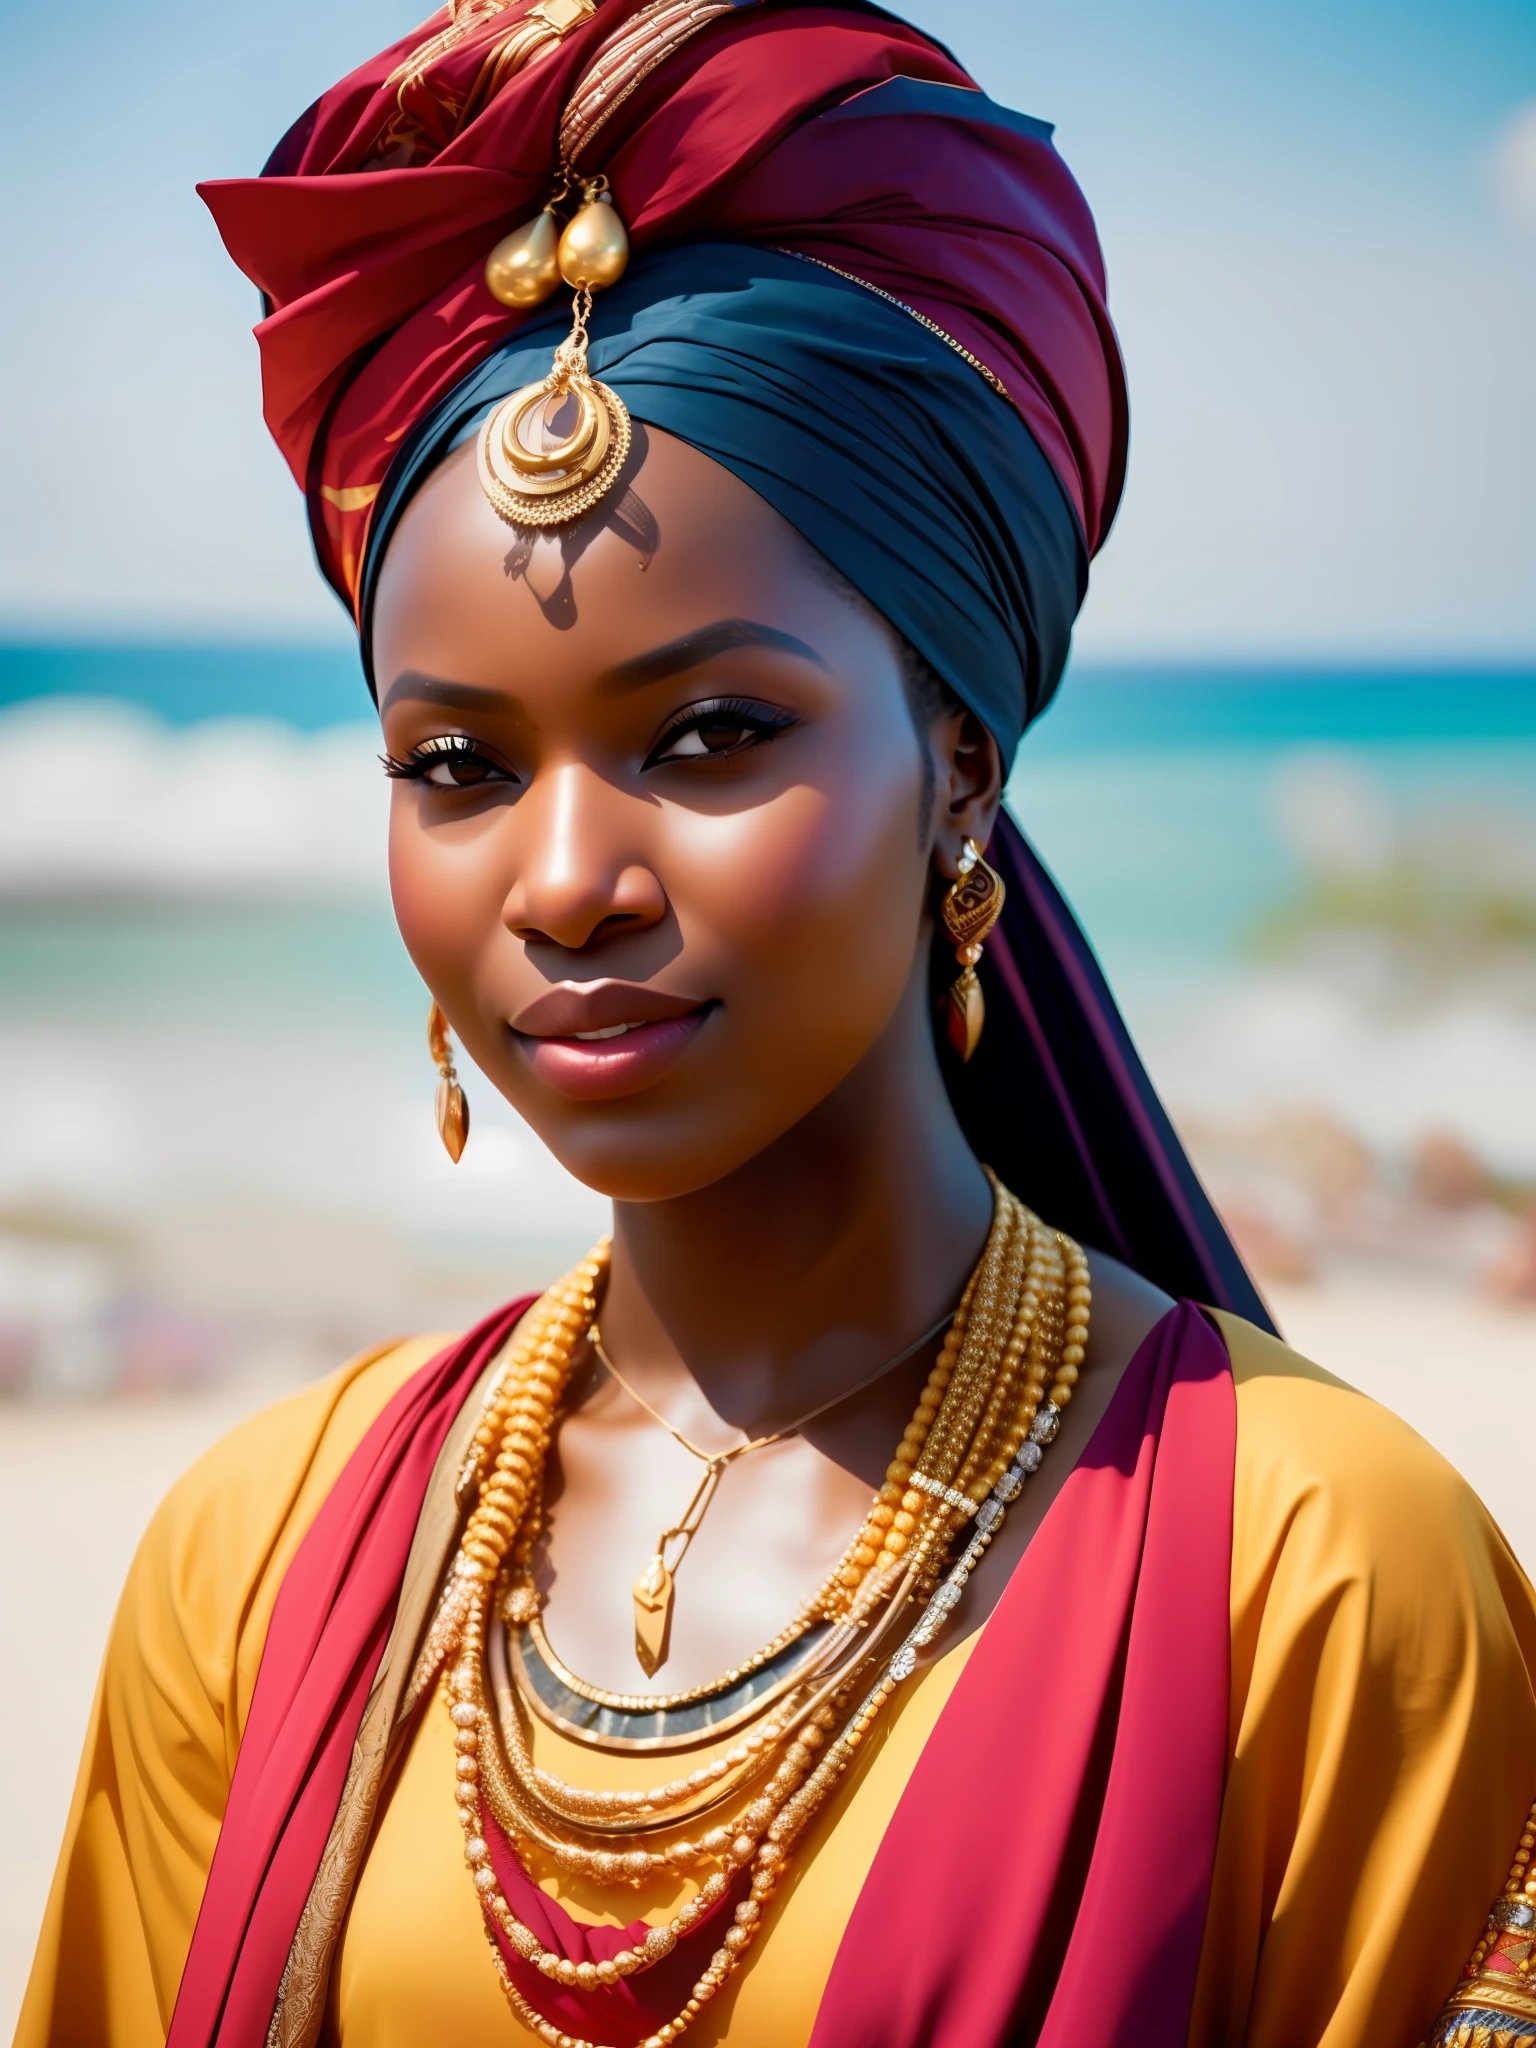 จริงสิ_ไซไฟ, จริงสิ_ไซไฟ_V2, ภาพเหมือนของหญิงสาวชาวแอฟริกันที่สวยมาก, หน้าชายหาด, เสื้อผ้าสีสันสดใส, ผ้าโพกหัวและเครื่องประดับแอฟริกันสีทอง, ใกล้ชิด, ท่าทางและทัศนคติอันสง่างาม. จริงสิ_โรงหนัง_V2. จริงสิ_โรงหนัง_V2